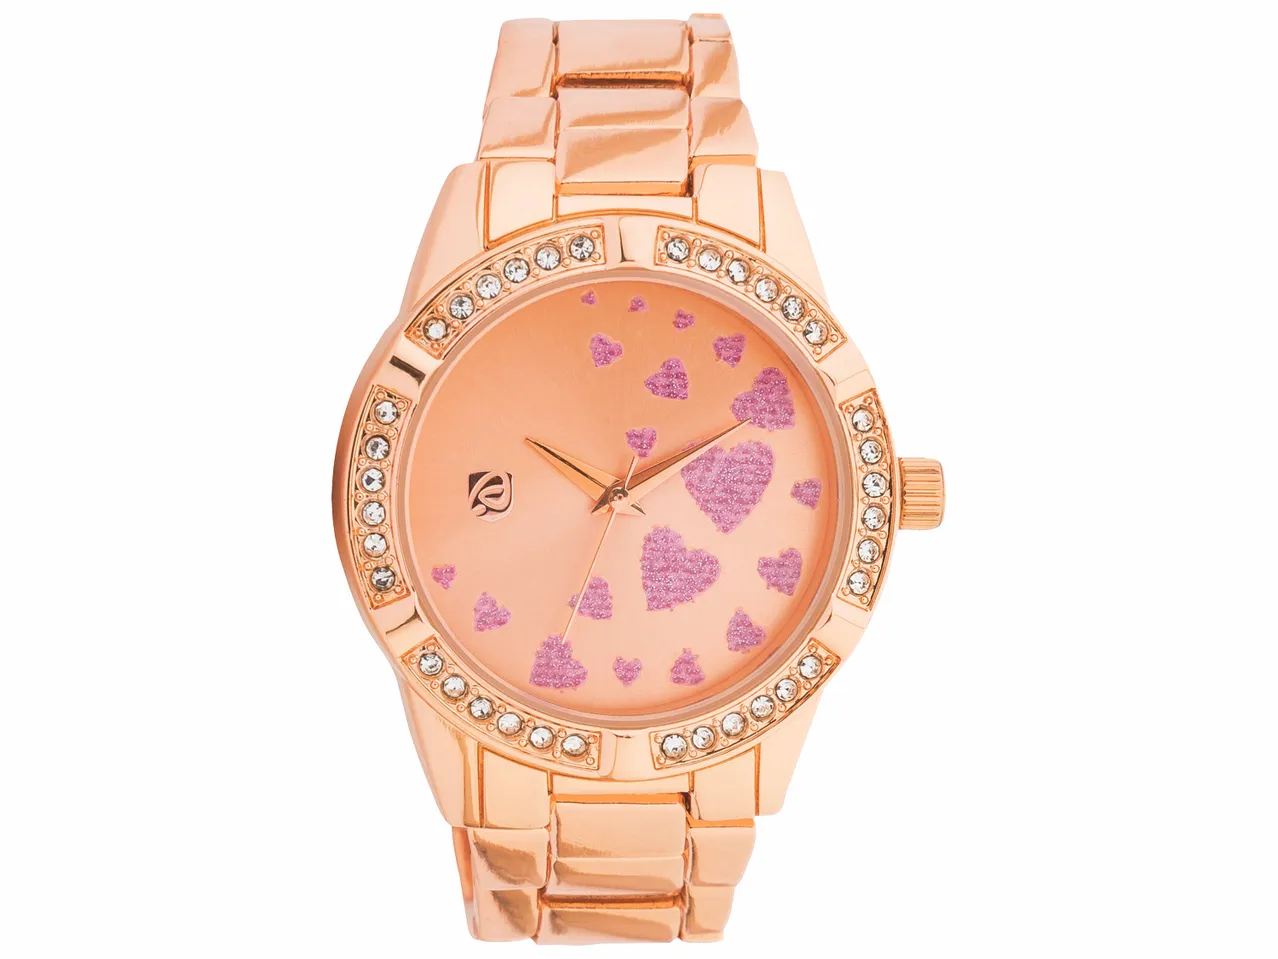 Parure montre et bracelet femme , prezzo 9.99 EUR 
Parure montre et bracelet femme ...